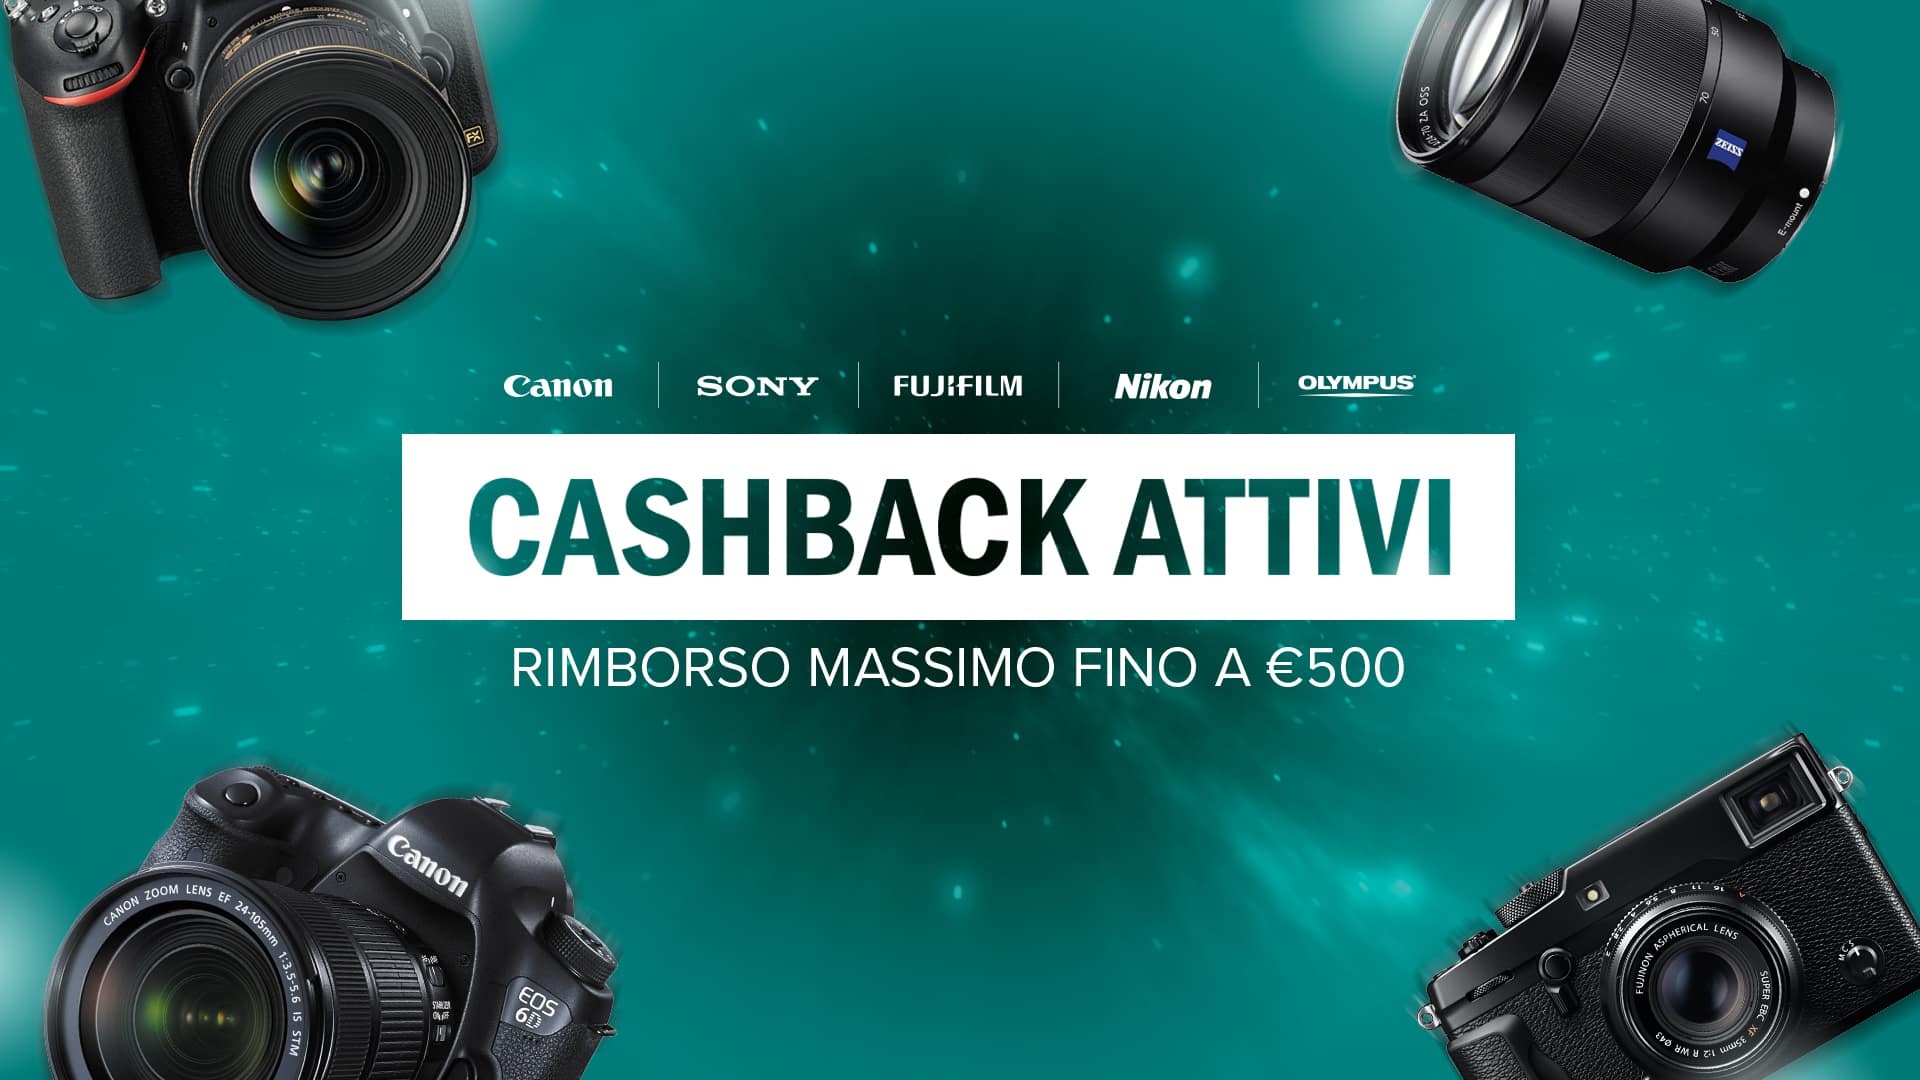 Ollo - Cashback fino a 500€ su Fotocamere, Obiettivi e Flash